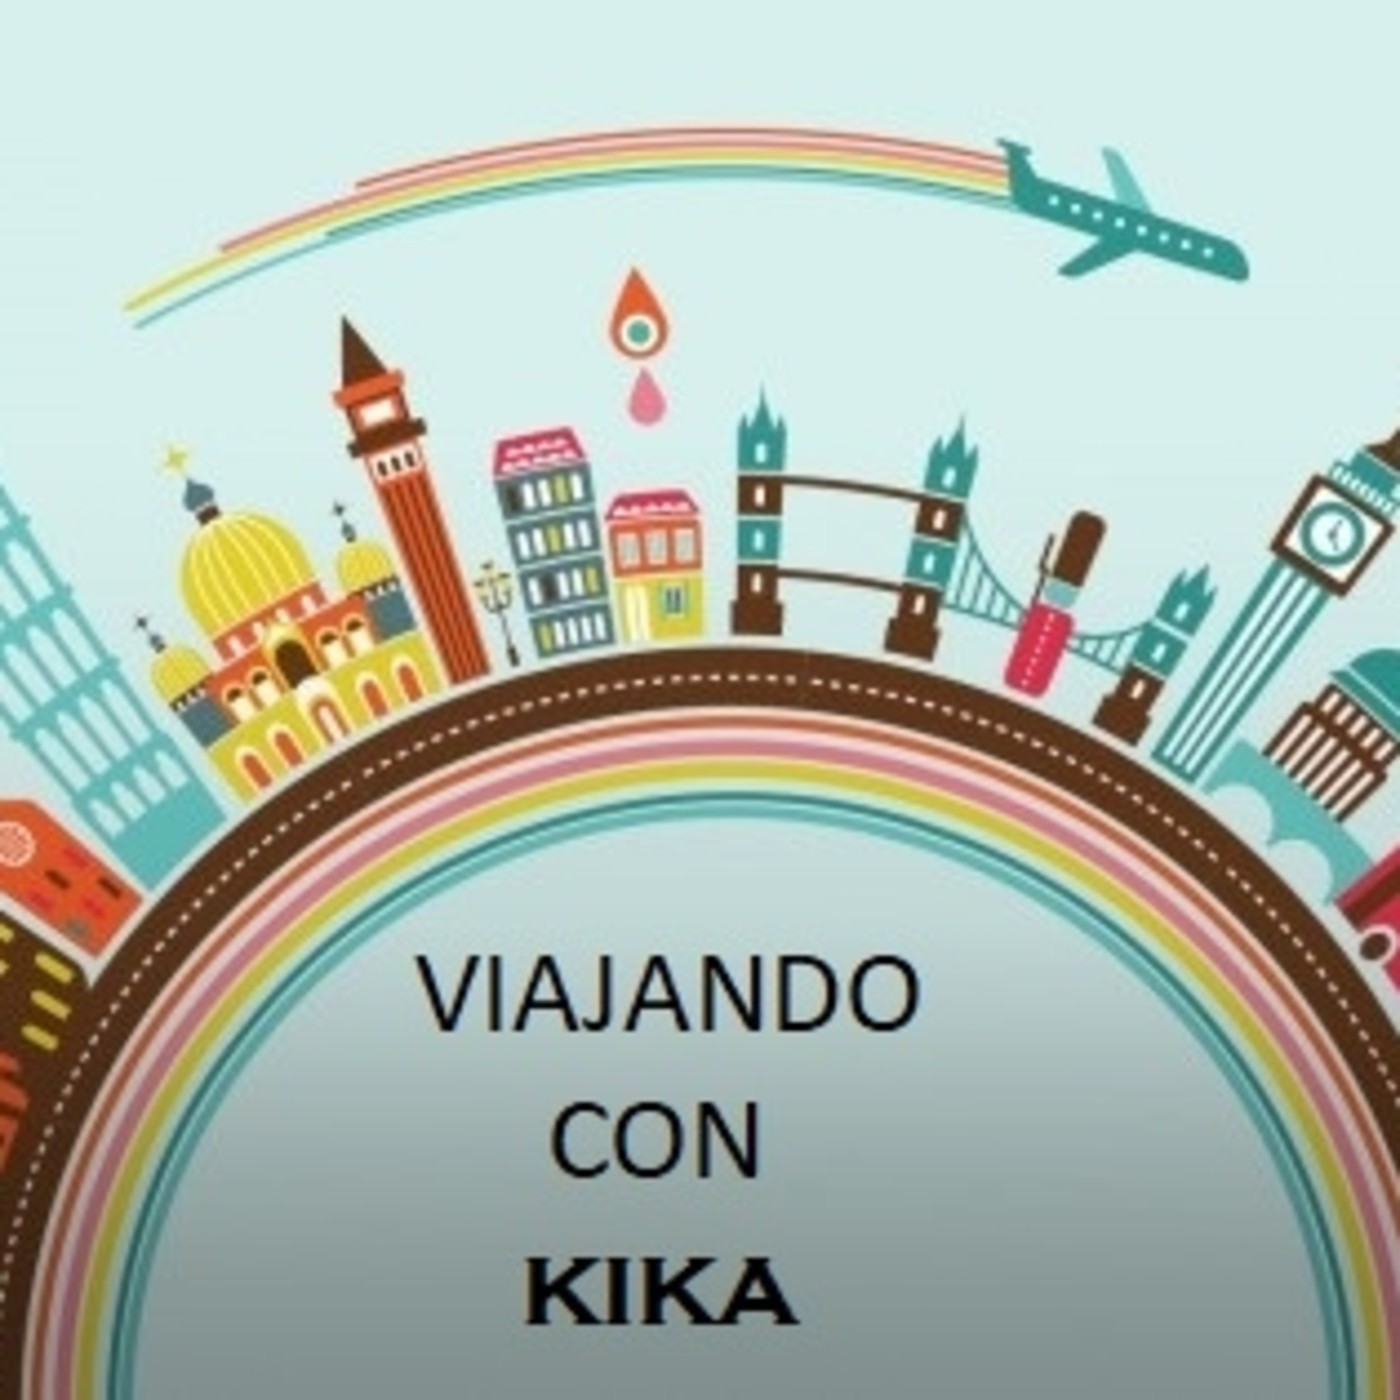 Viajando con Kika, episodio 53: Ana Botella y Herick Campos, 14-11-19